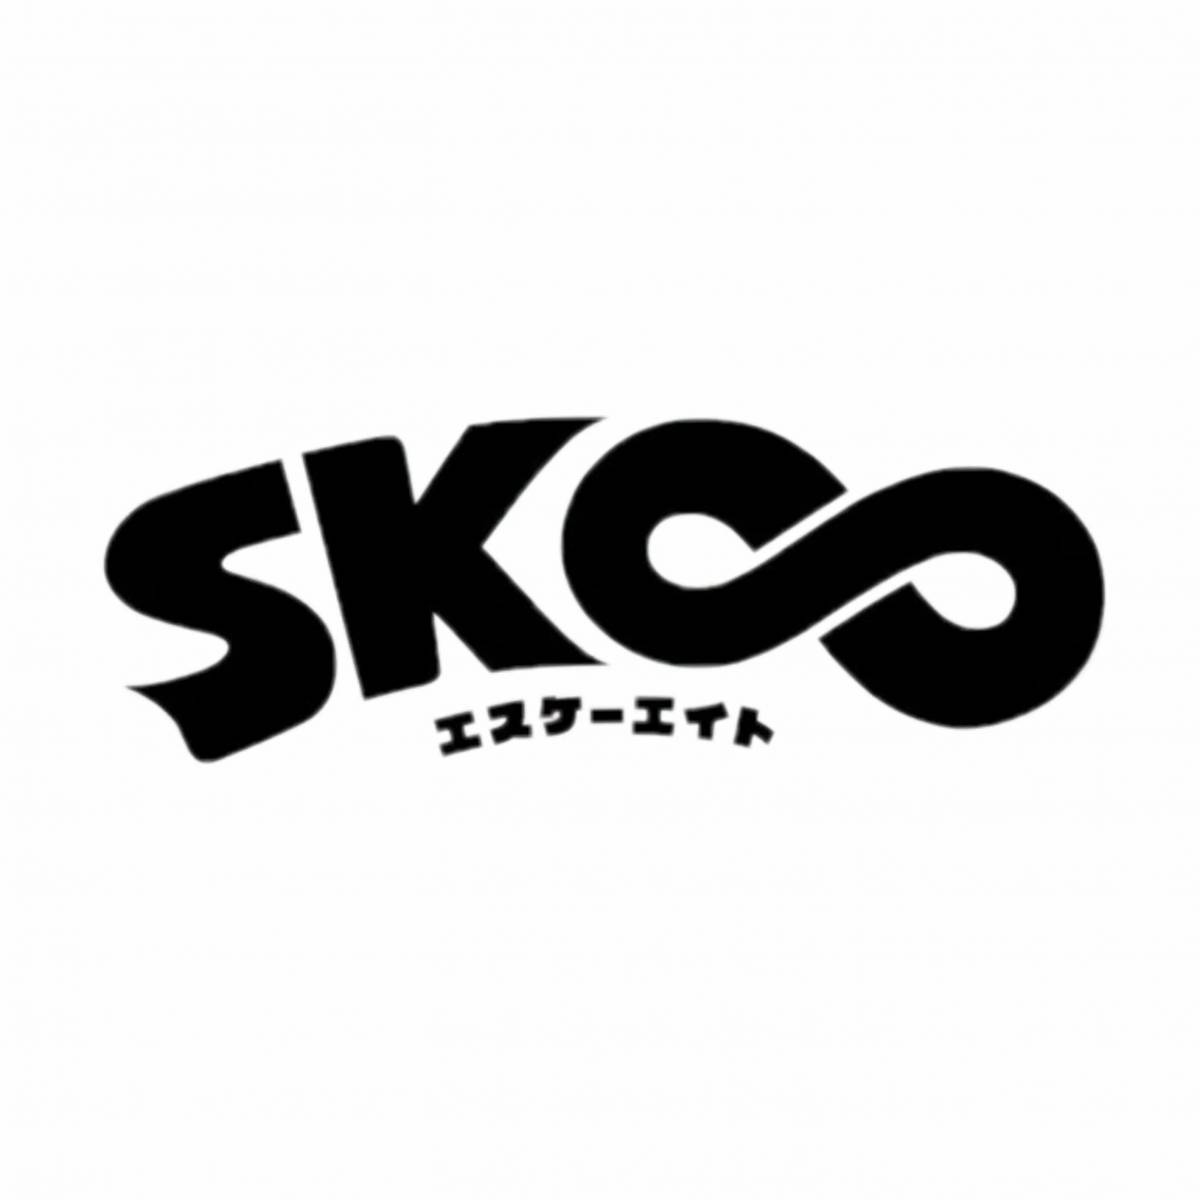 Скейт бесконечность логотип sk8. Стикеры скейт бесконечность. Наклейки на скейт. Скейт бесконечность фф